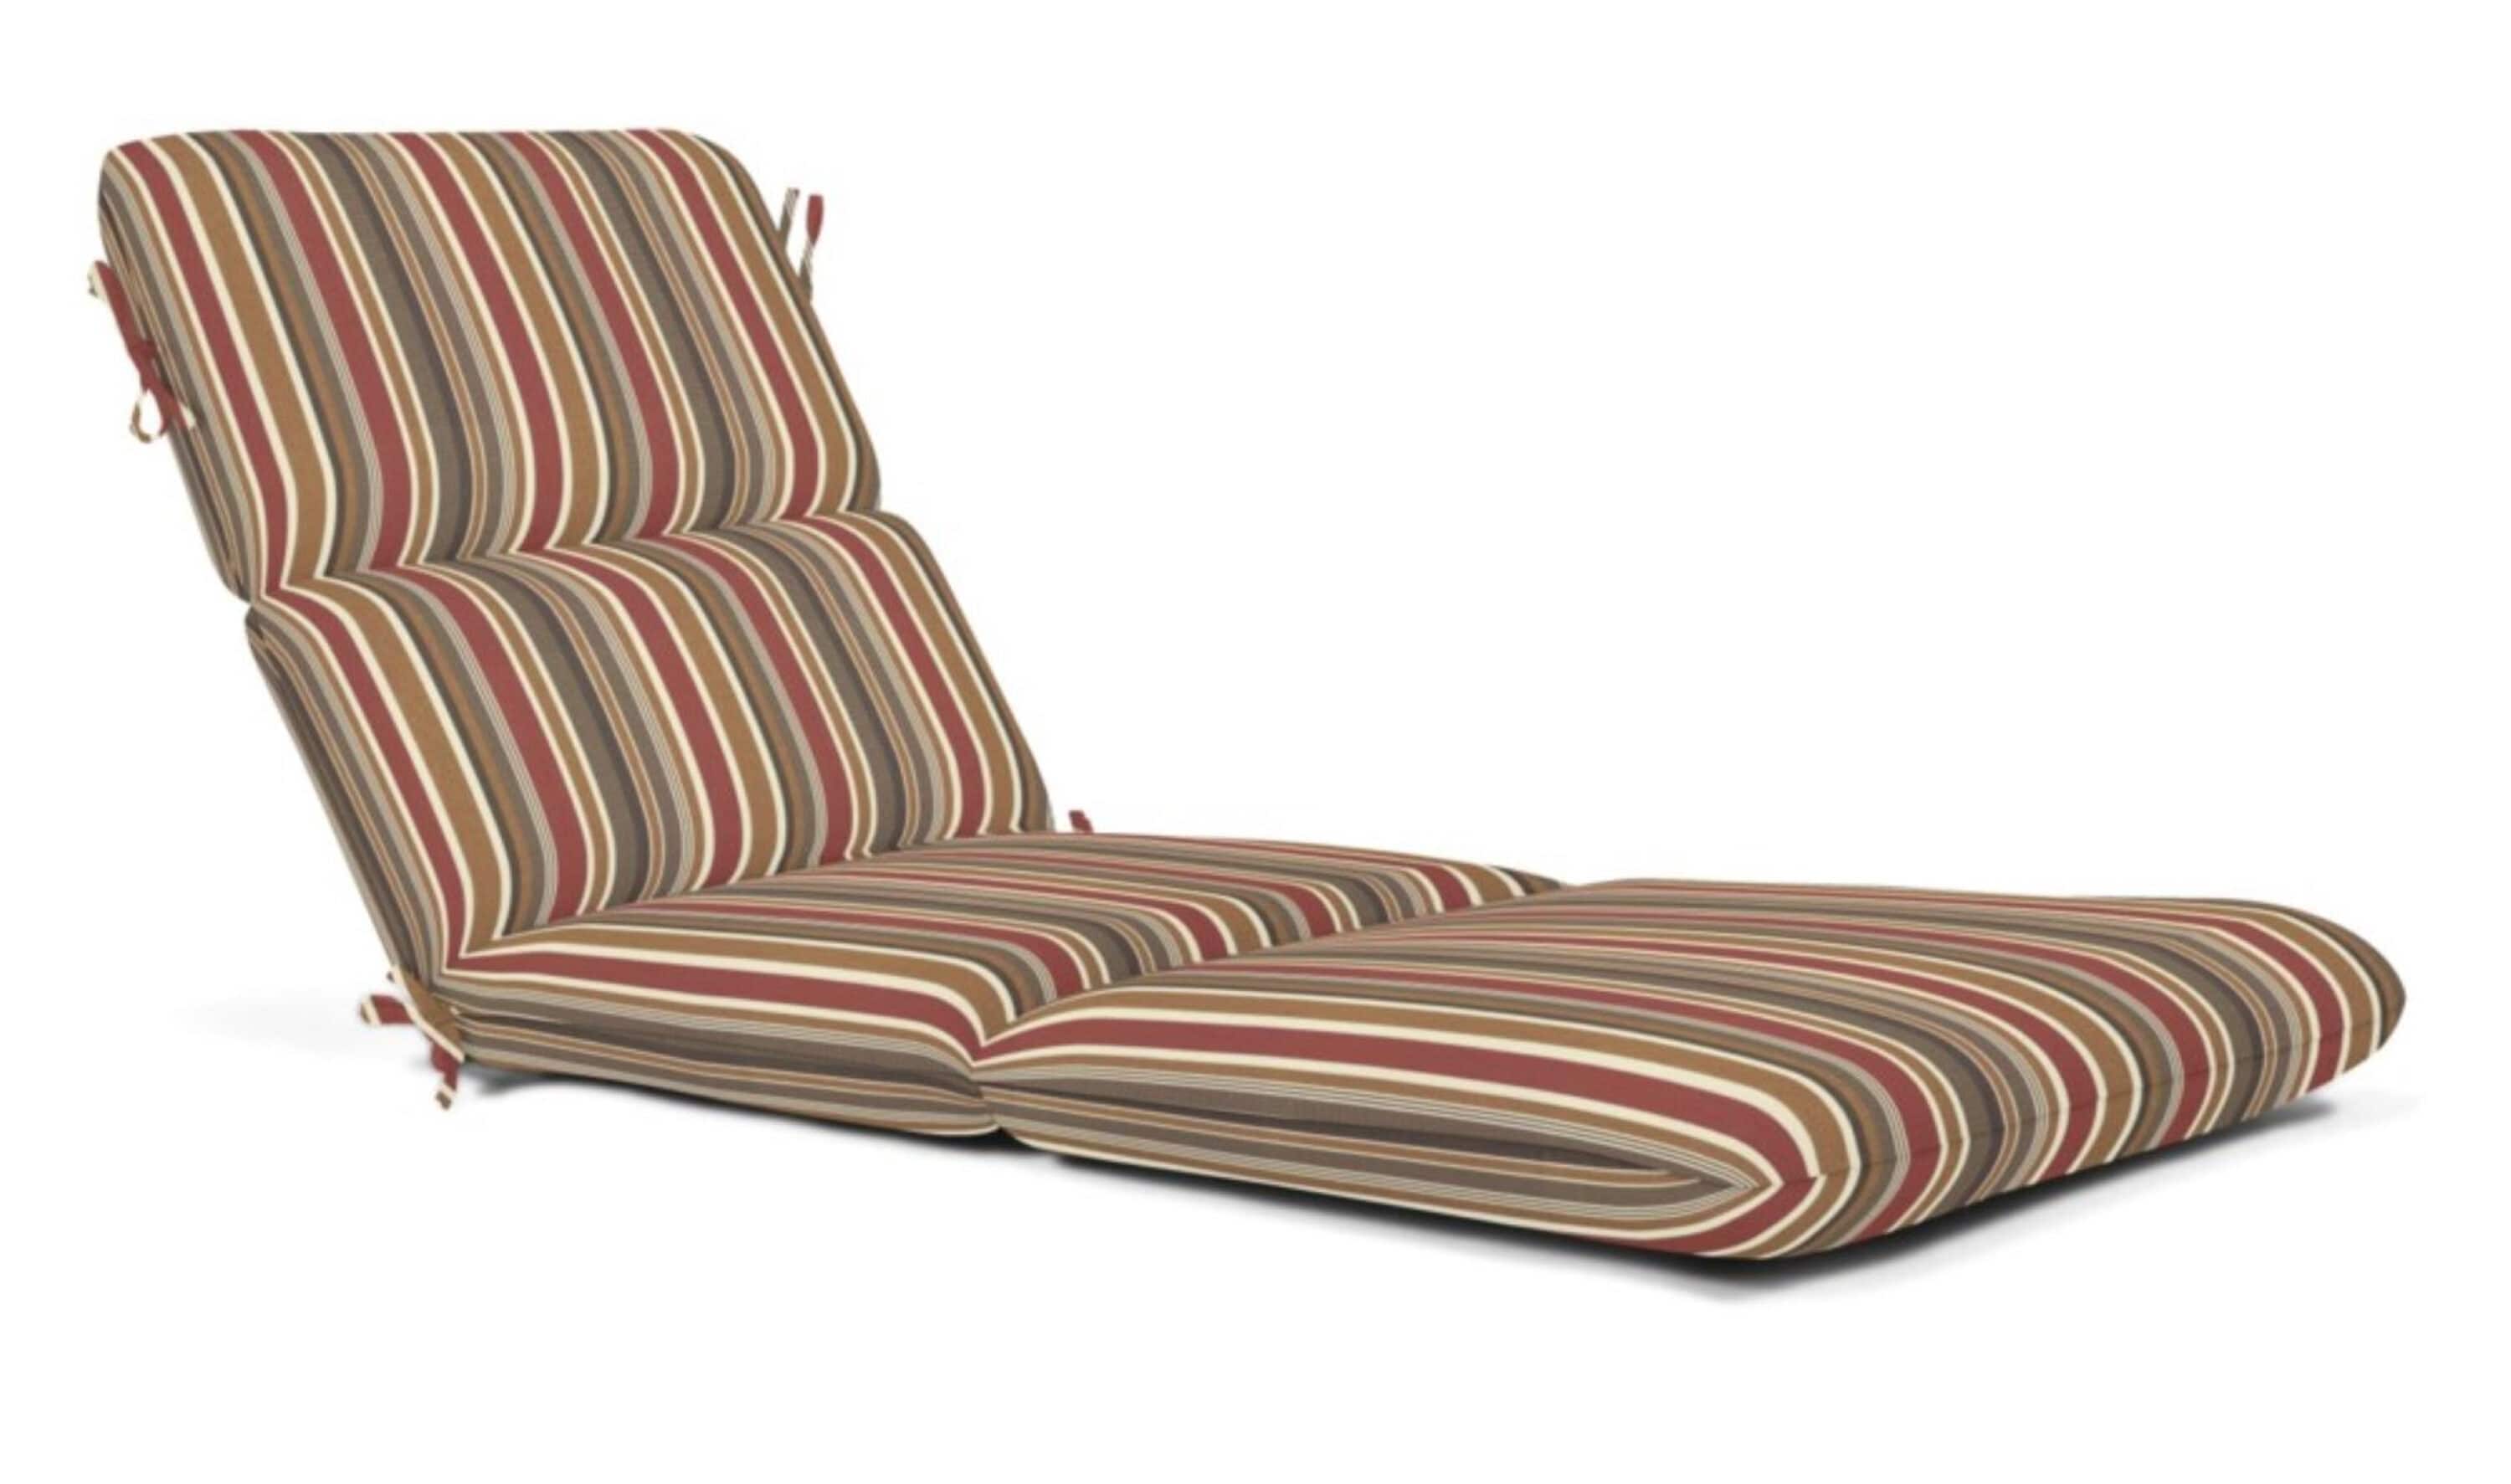 Tufted Chair Cushion: 22.5 x 22